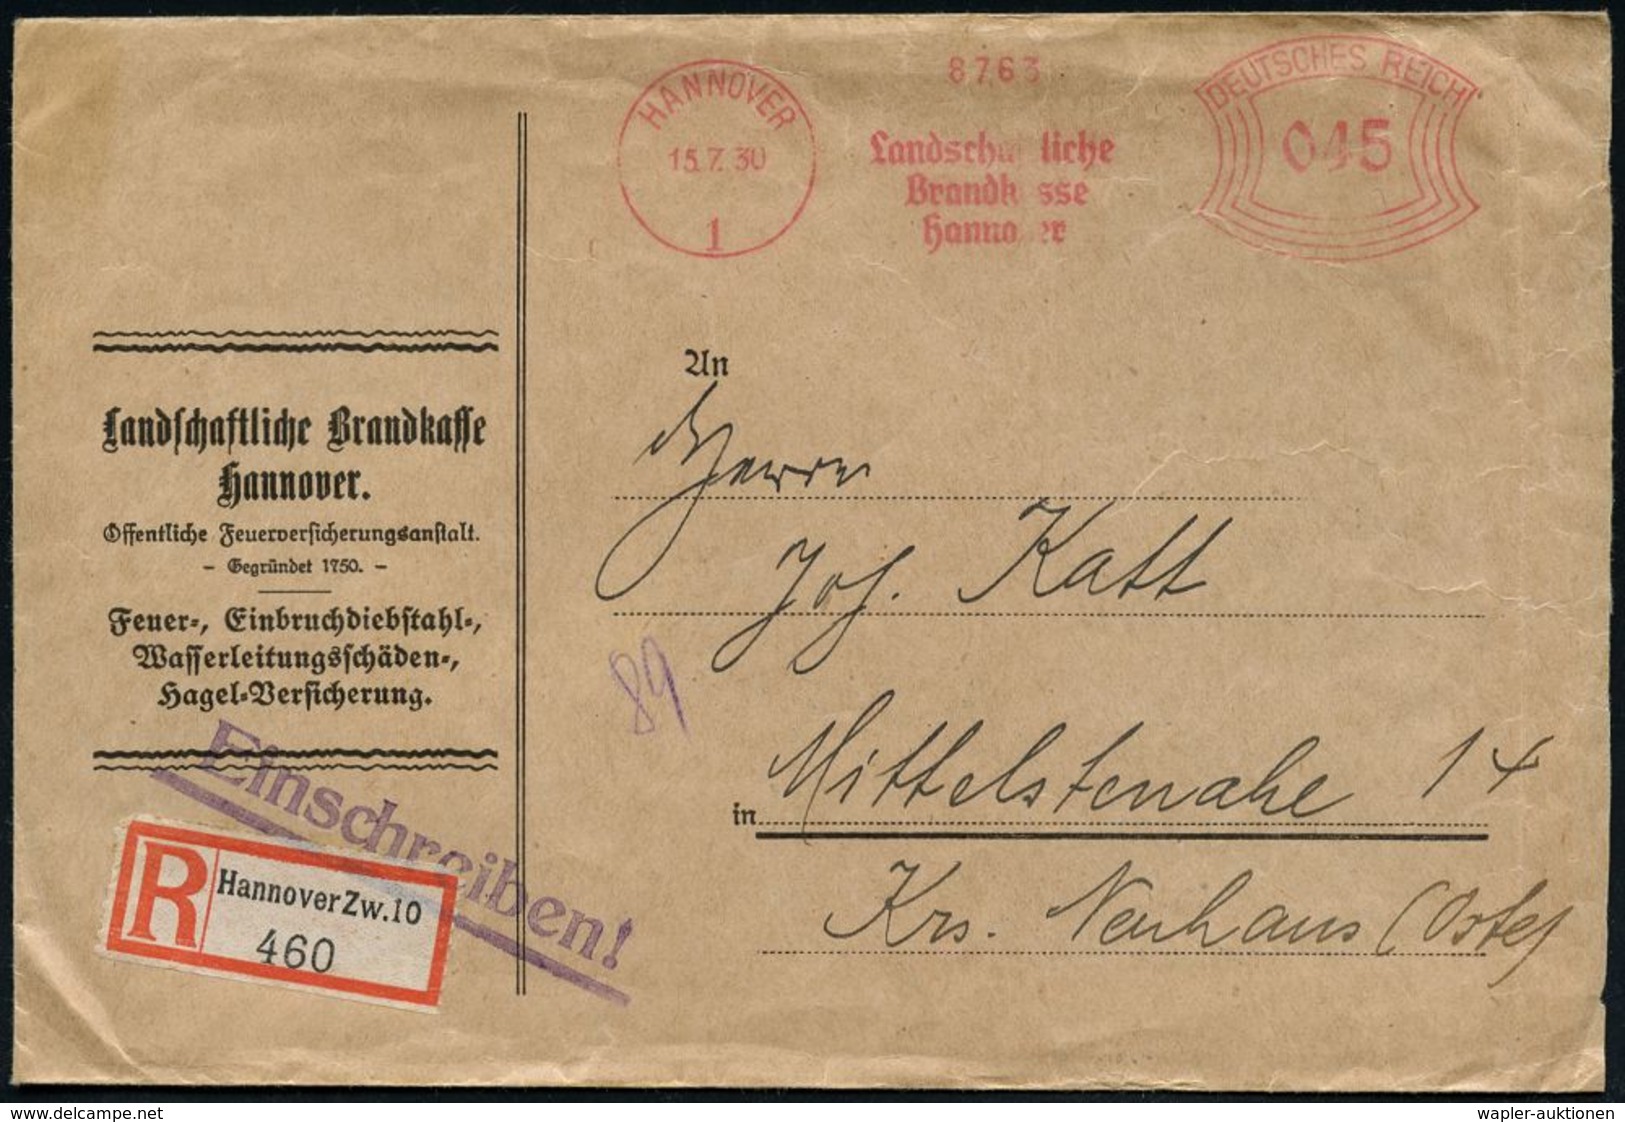 FEUERWEHR / BRANDVERHÜTUNG & -BEKÄMPFUNG : HANNOVER/ 1/ Landschaftliche/ Brandkasse.. 1930 (15.7.) AFS 045 Pf. + RZ: Han - Feuerwehr